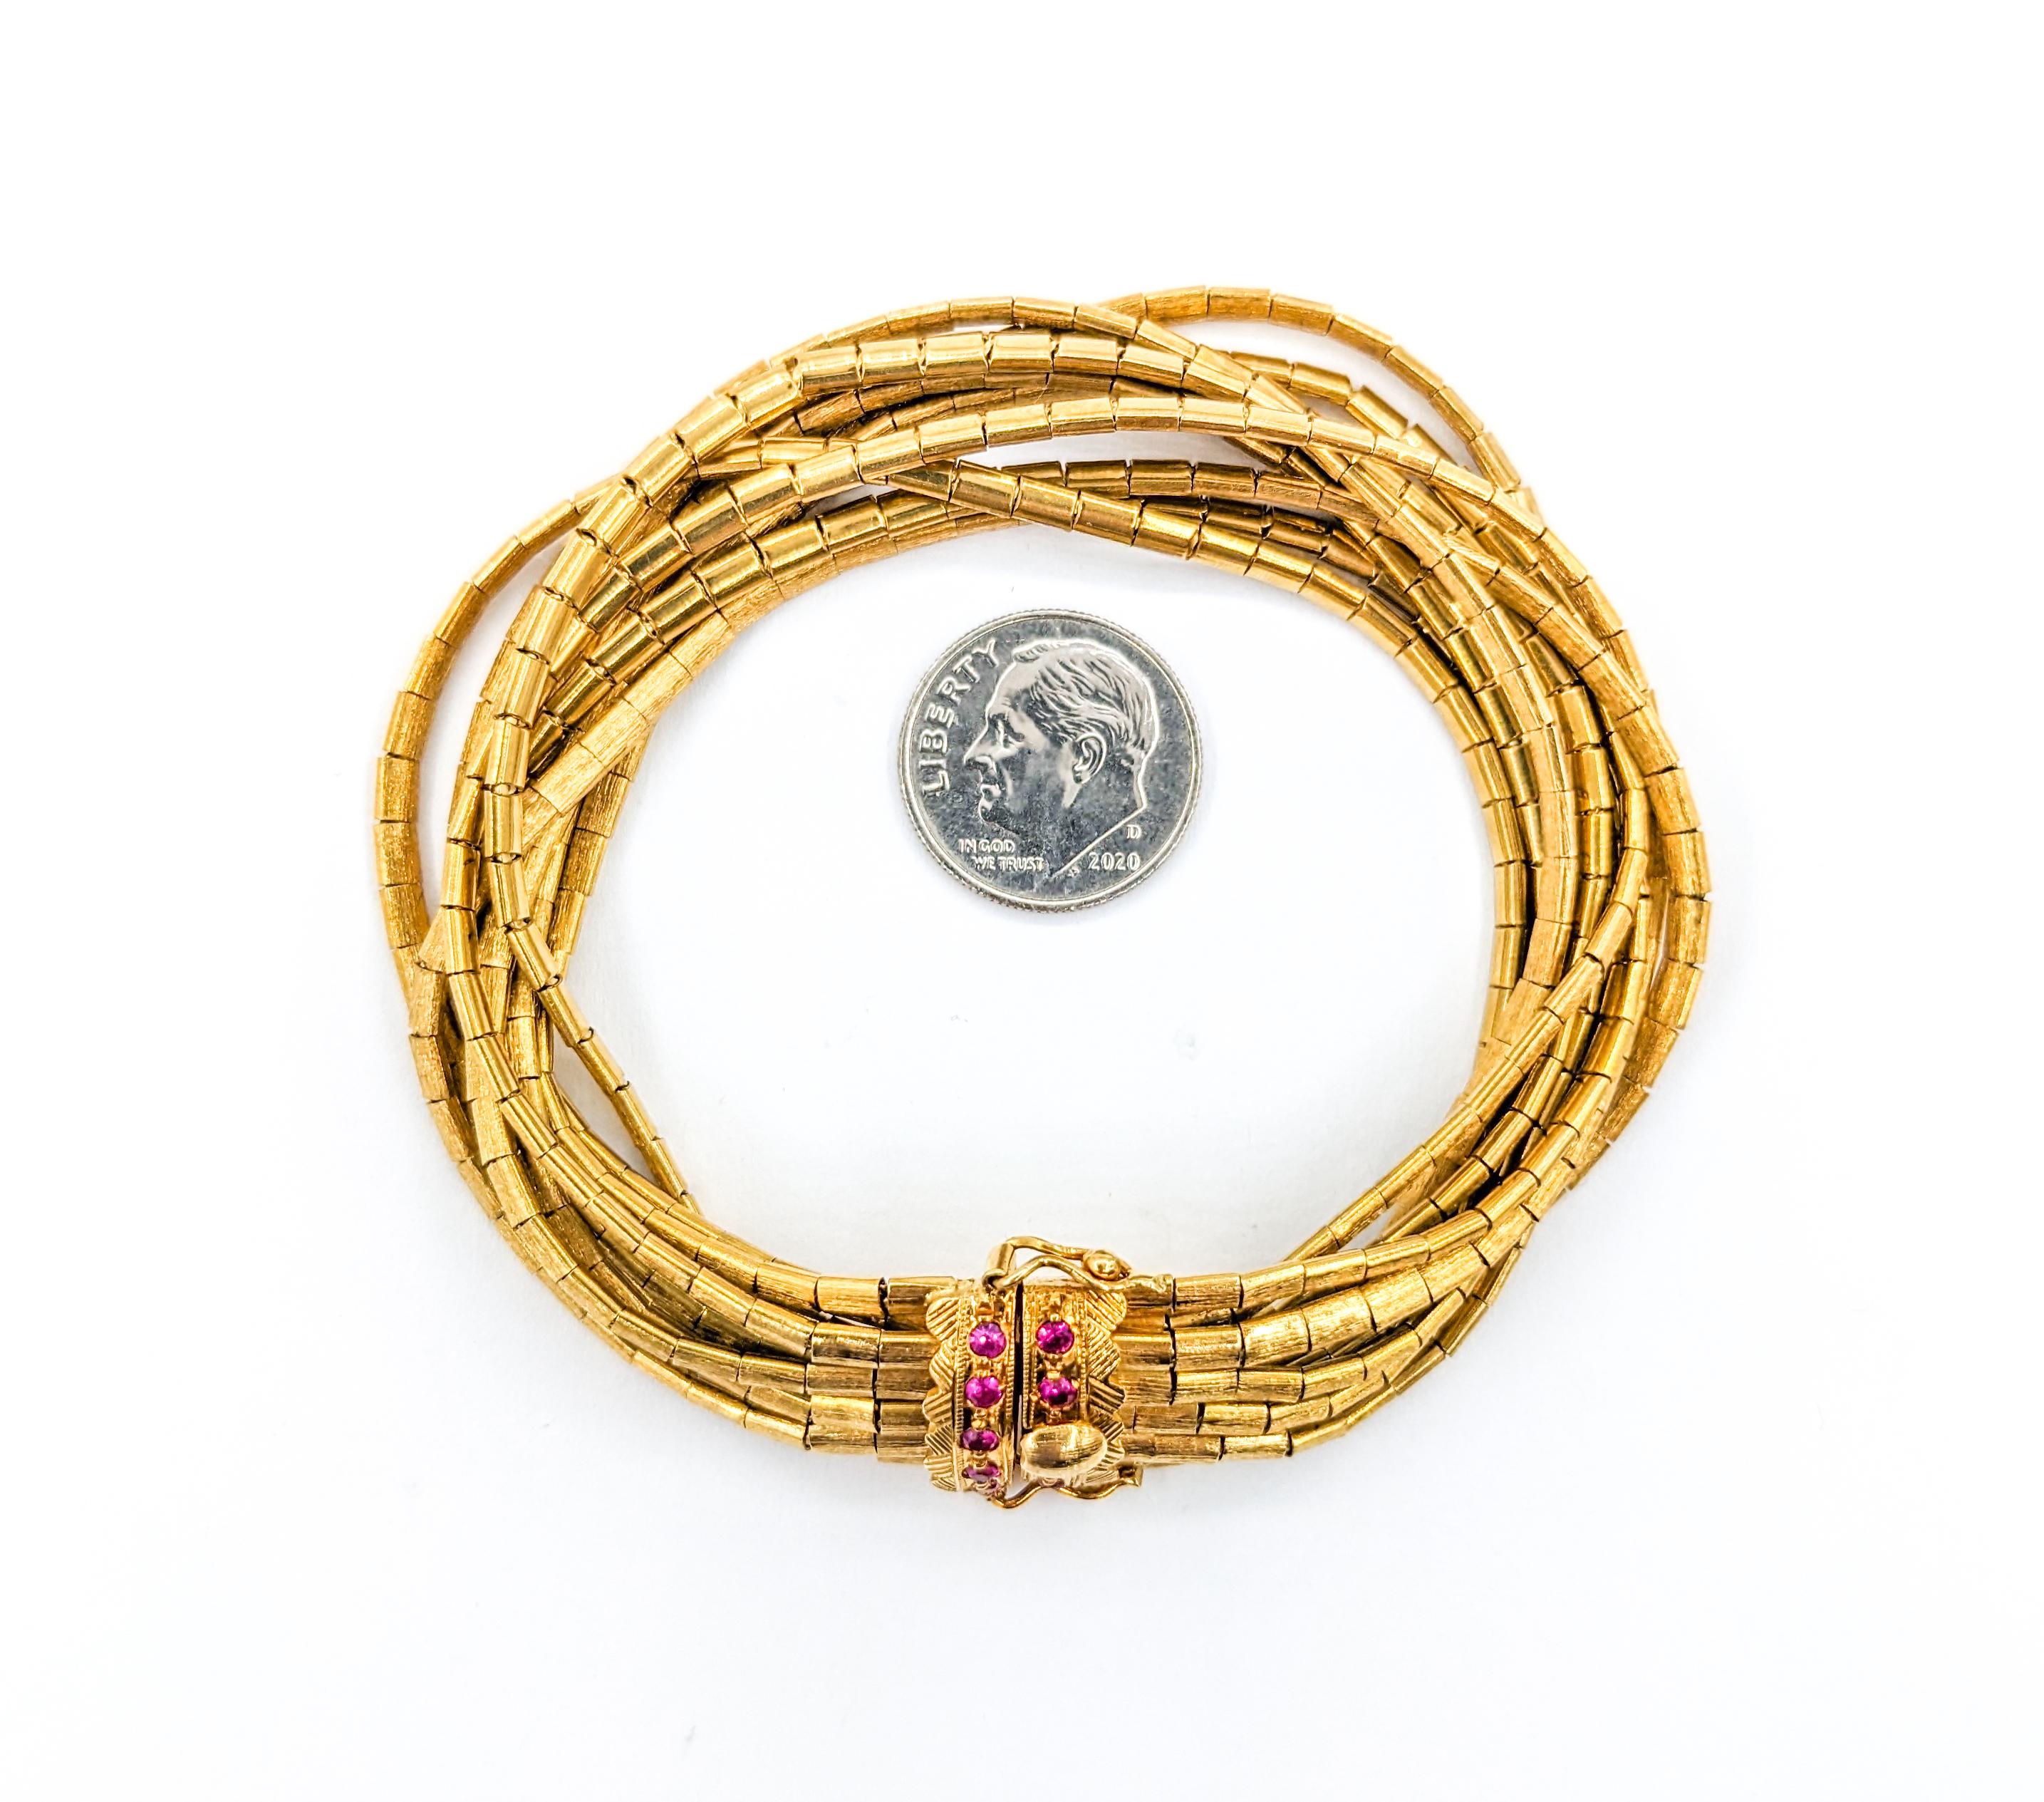 Bracelet vintage 9 brins de rubis en or jaune

Admirez la grandeur de notre bracelet Vintage à 9 brins, un témoignage de design intemporel et d'opulence, forgé dans de l'or jaune 18kt. Il s'enorgueillit d'un poids total d'un quart de carat de rubis